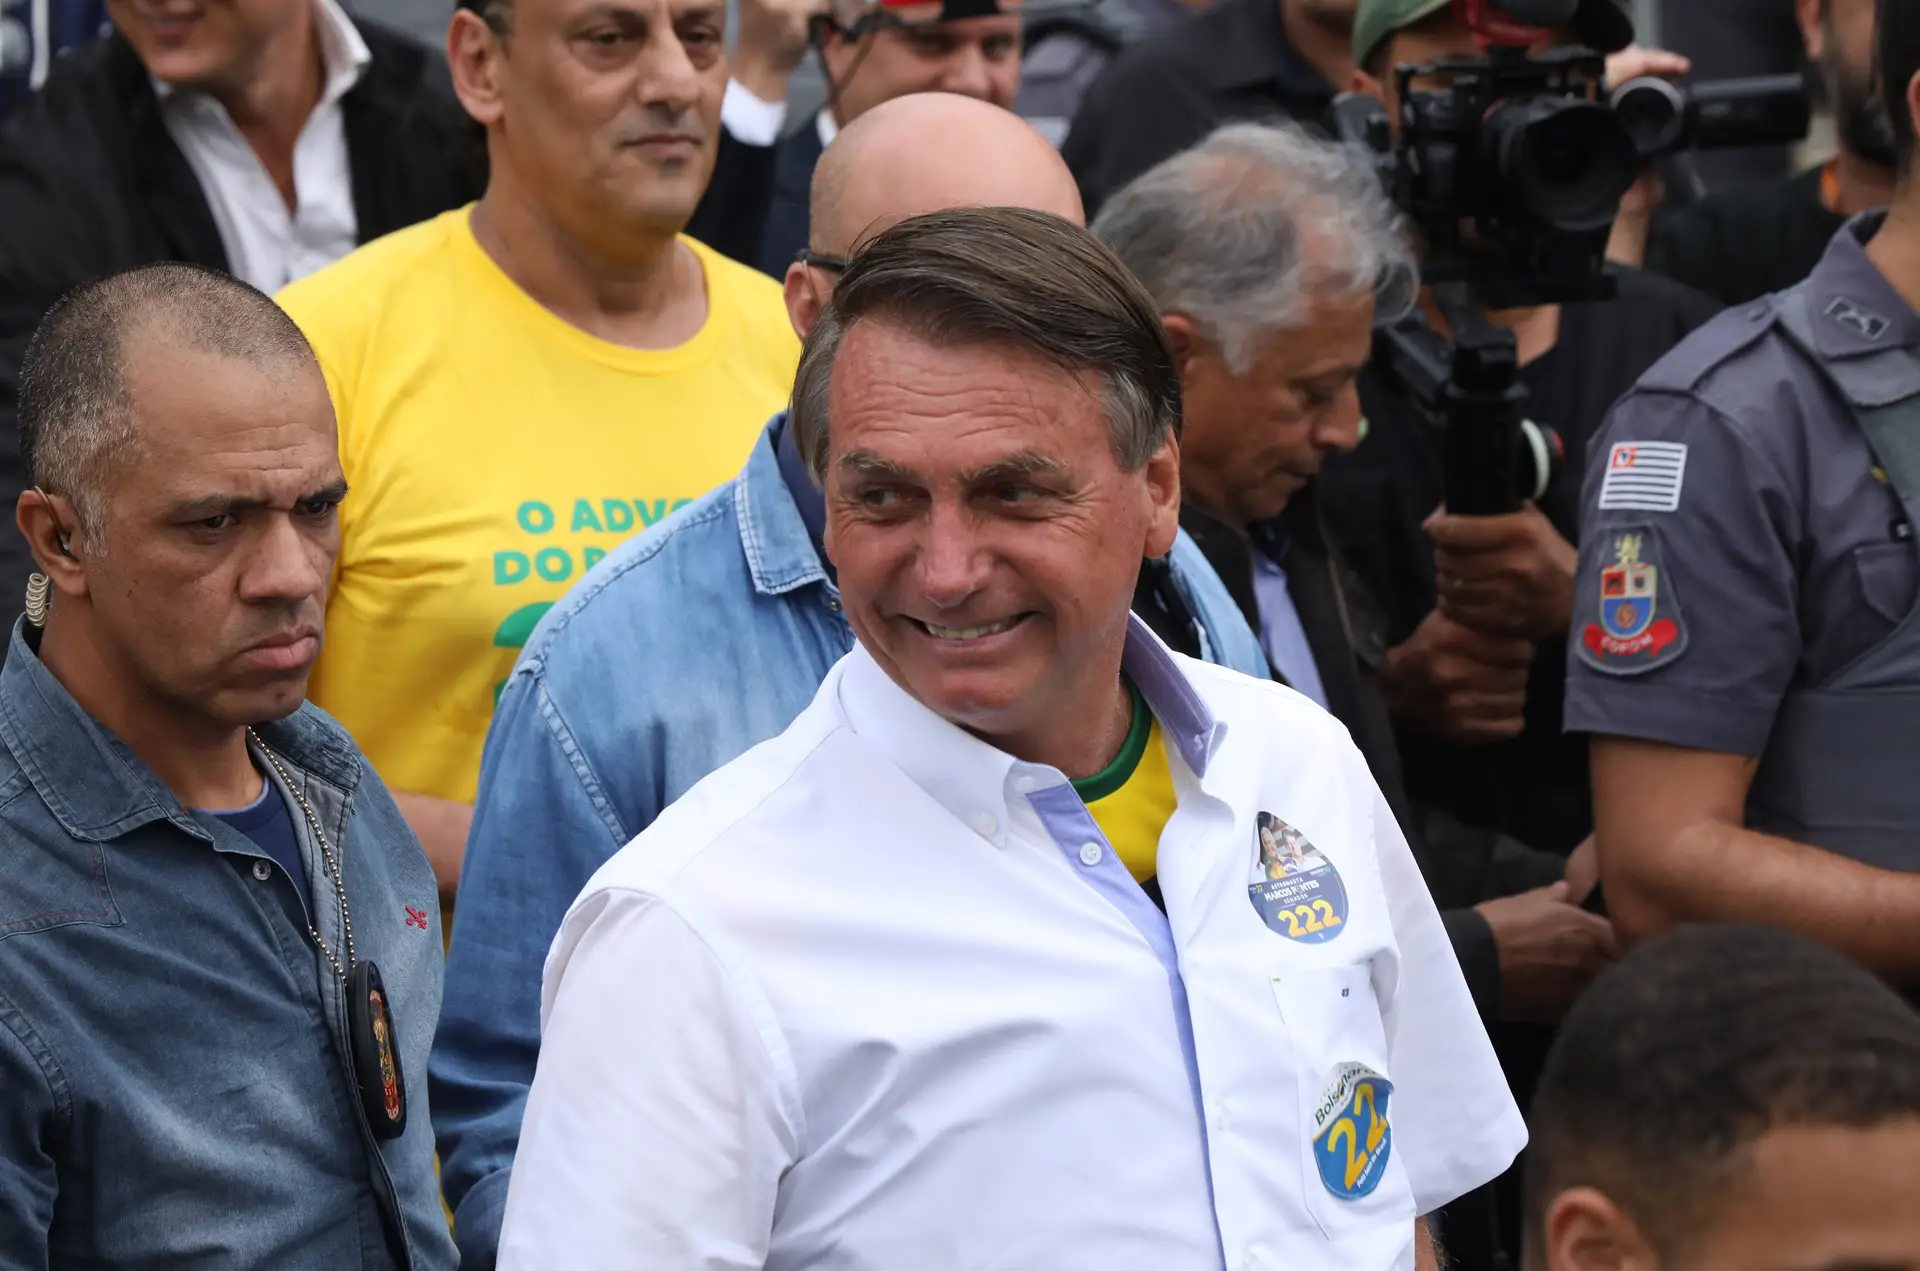 André Ventura grava mensagem de apoio a Jair Bolsonaro